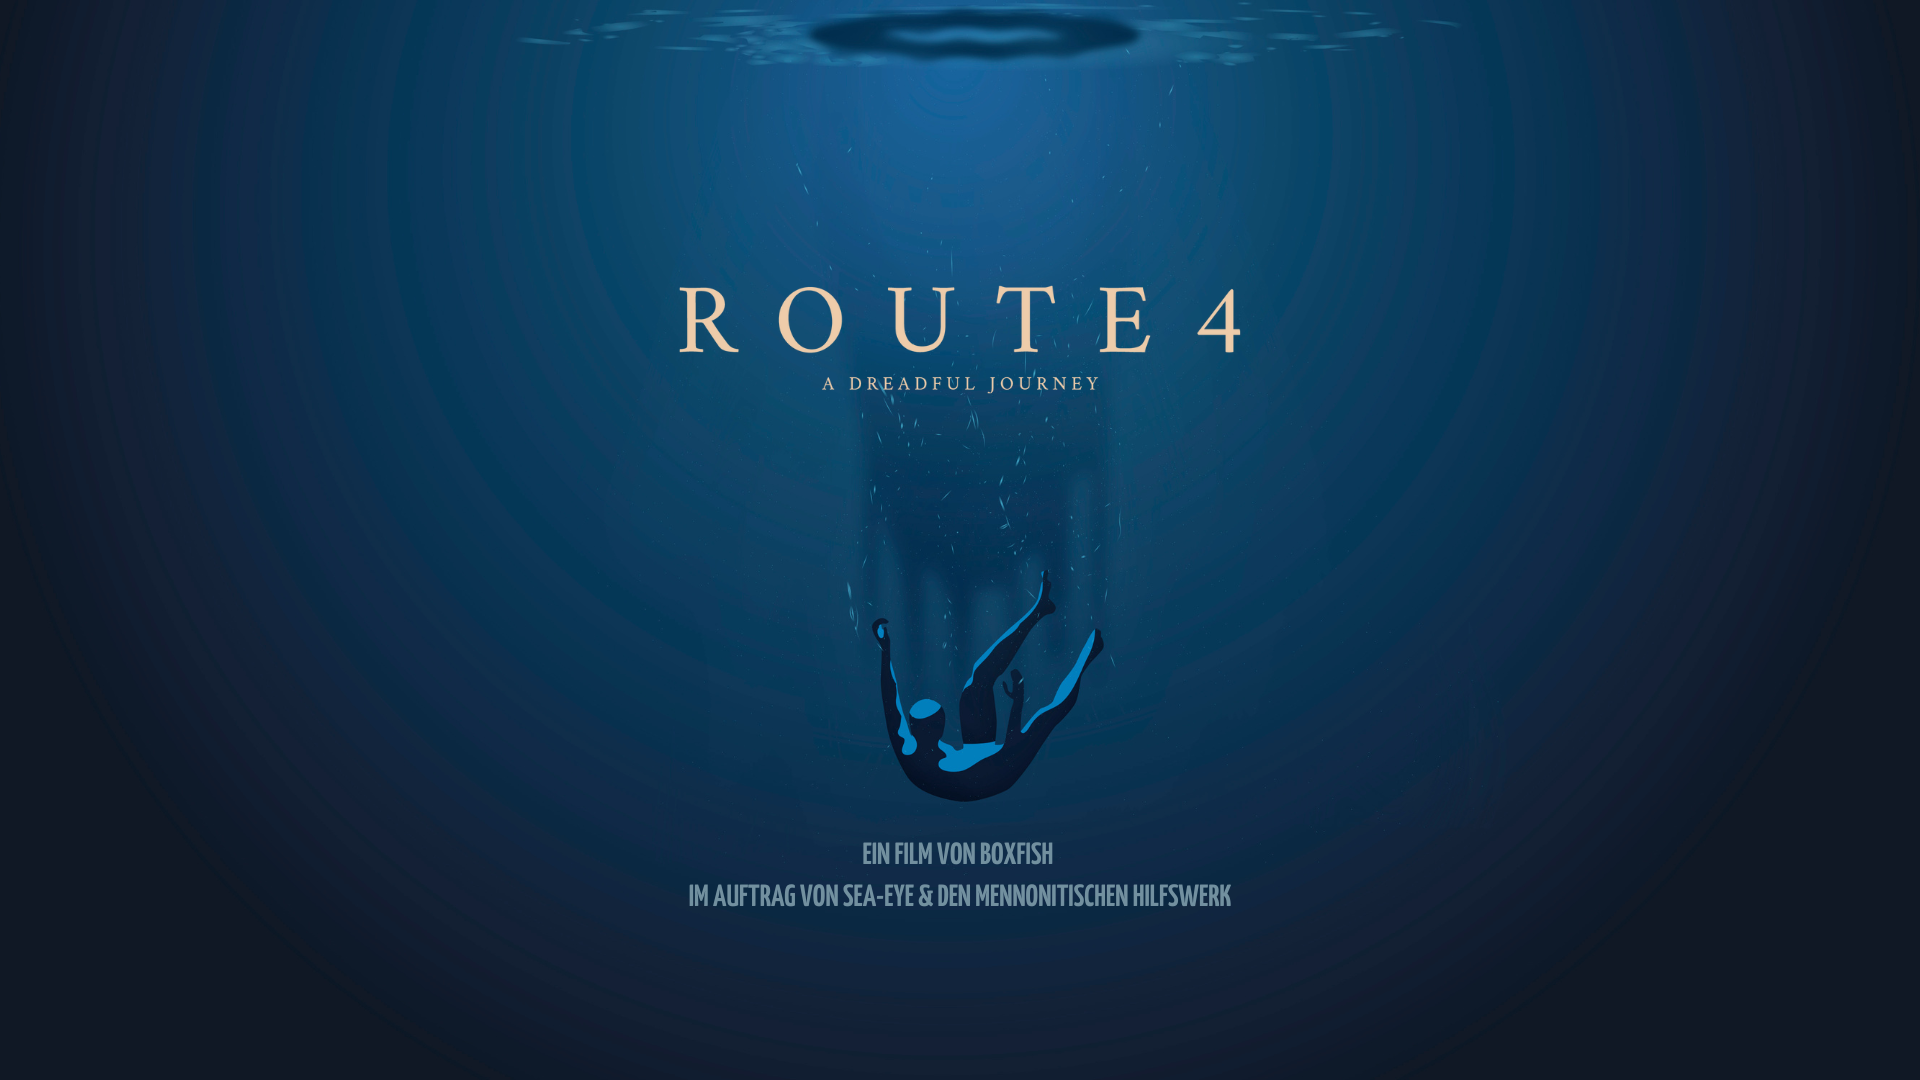 Filmvorführung: „Route 4“ in der Kulturcafete